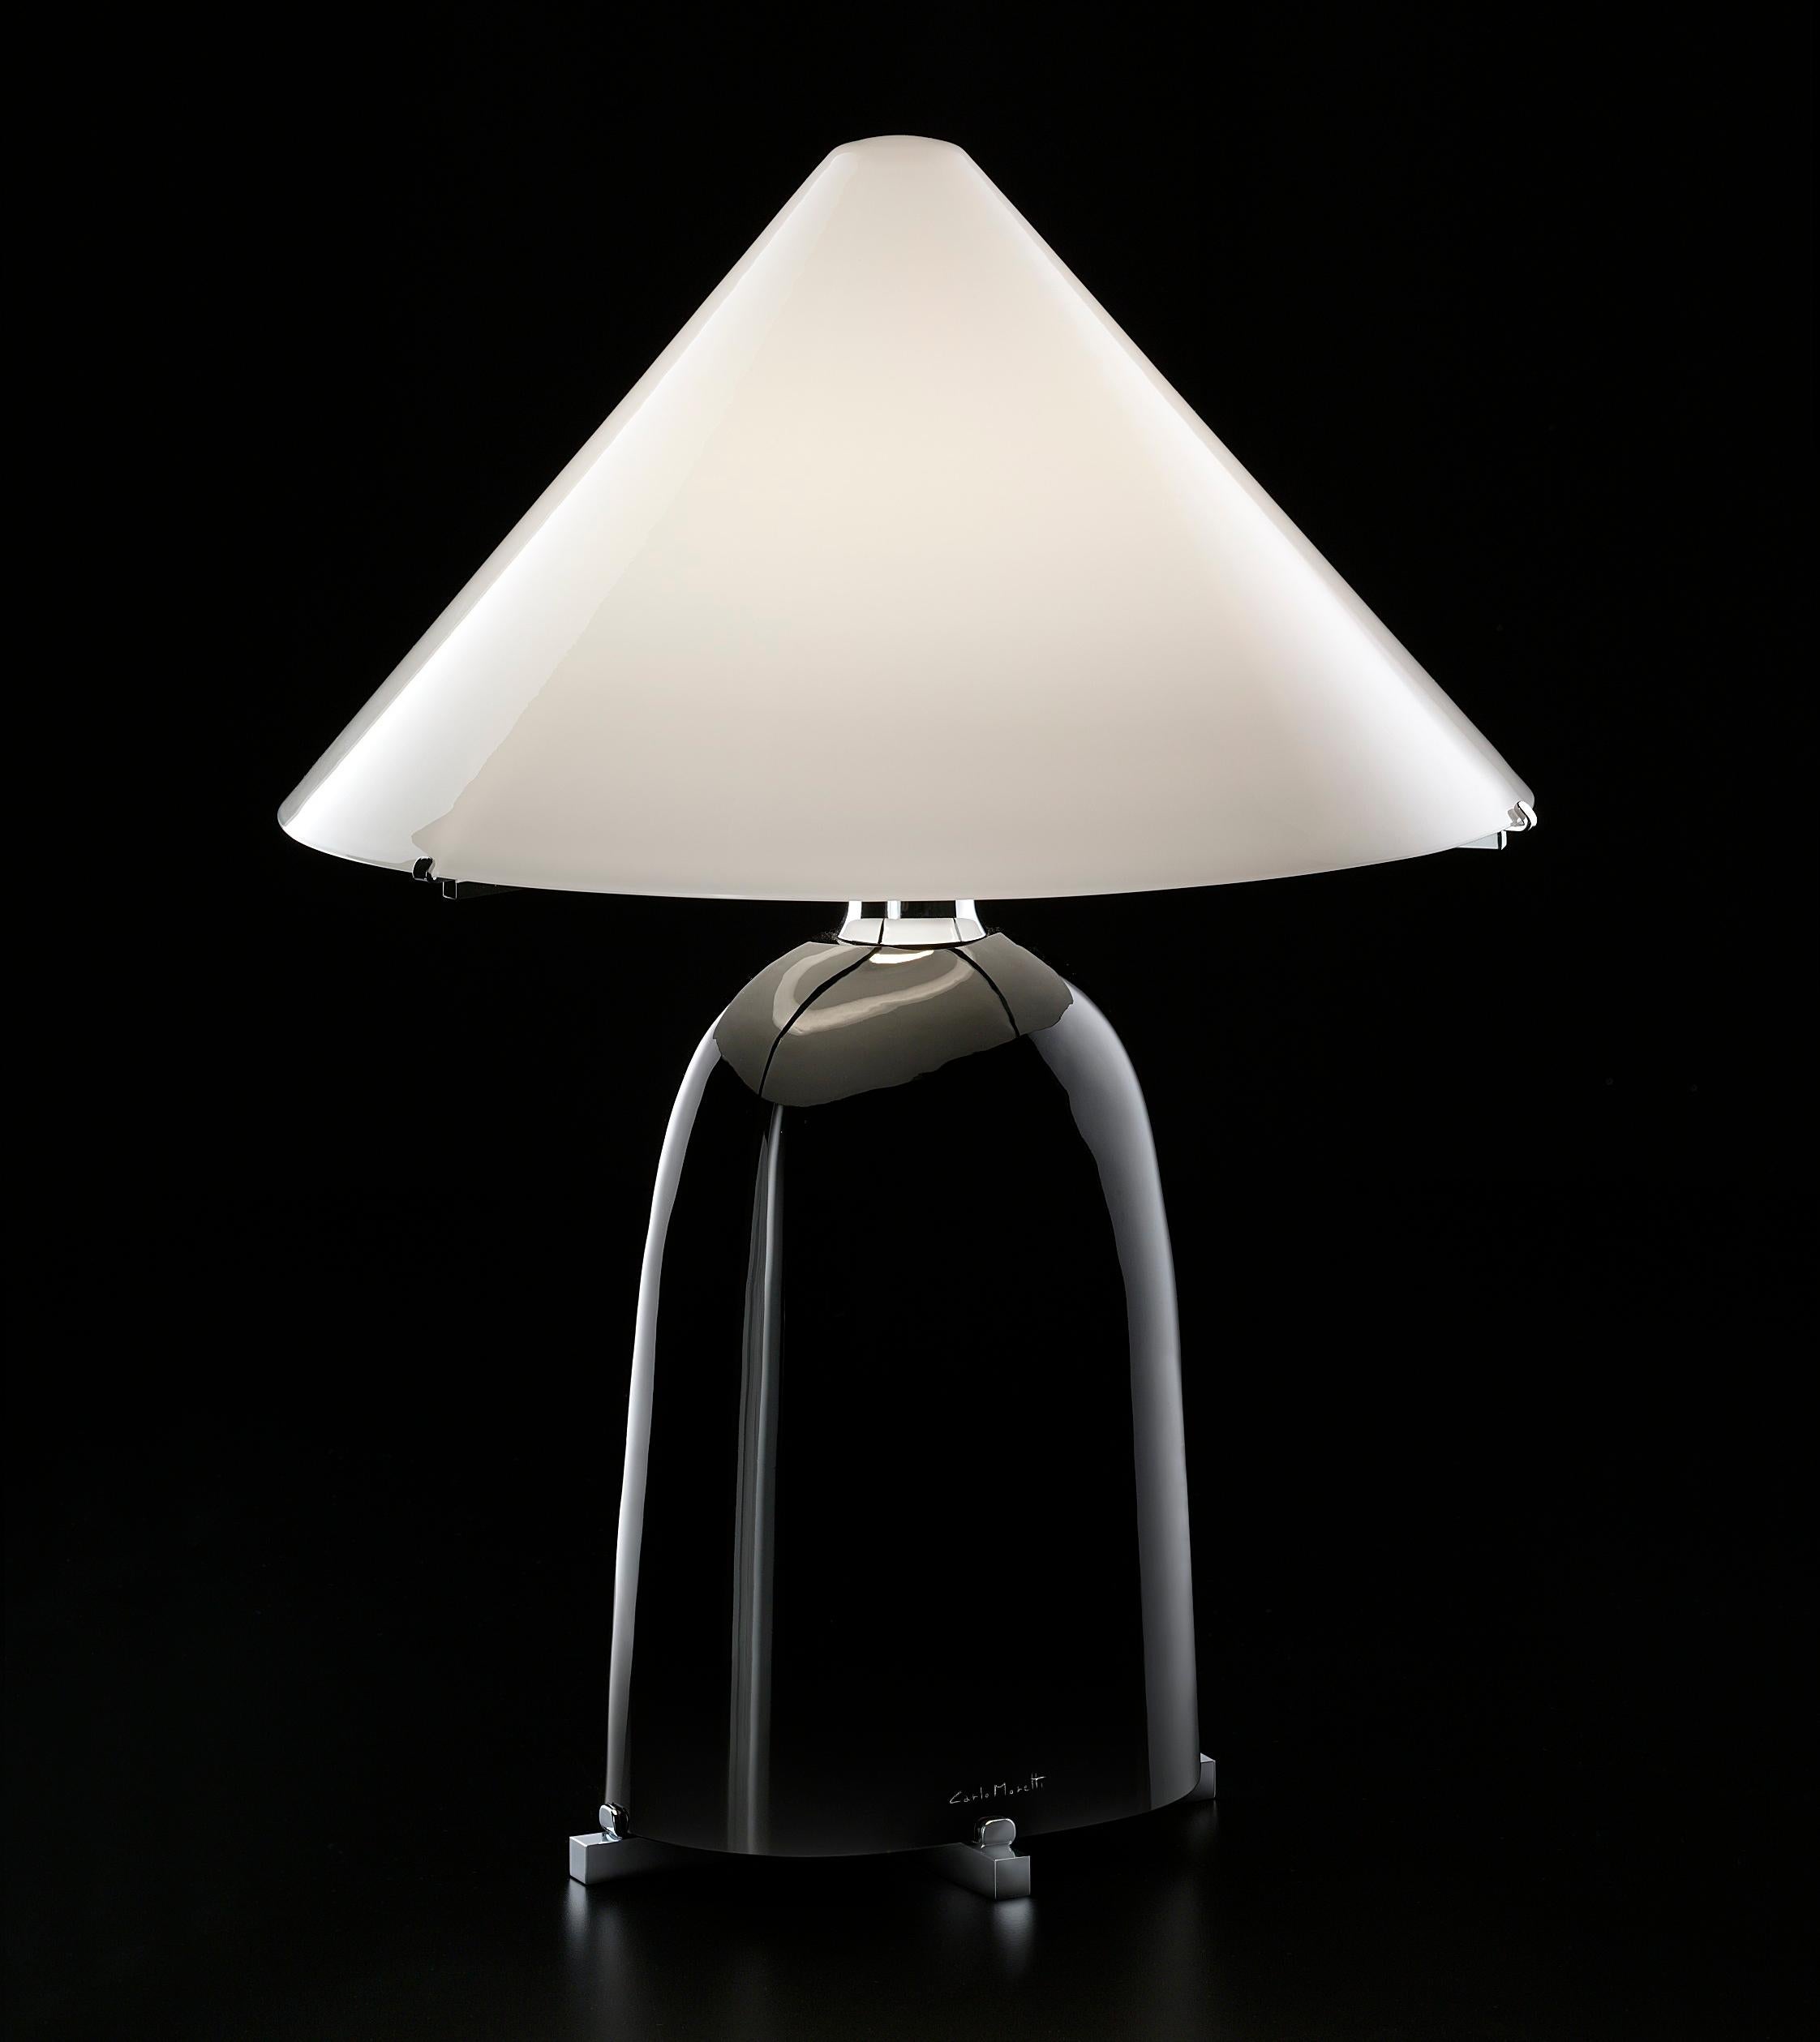 Carlo Moretti schuf die Ovale-Leuchte in den 1980er Jahren.
Der Schirm ist ebenfalls aus Glas, was diese Lampe einzigartig schön macht. 